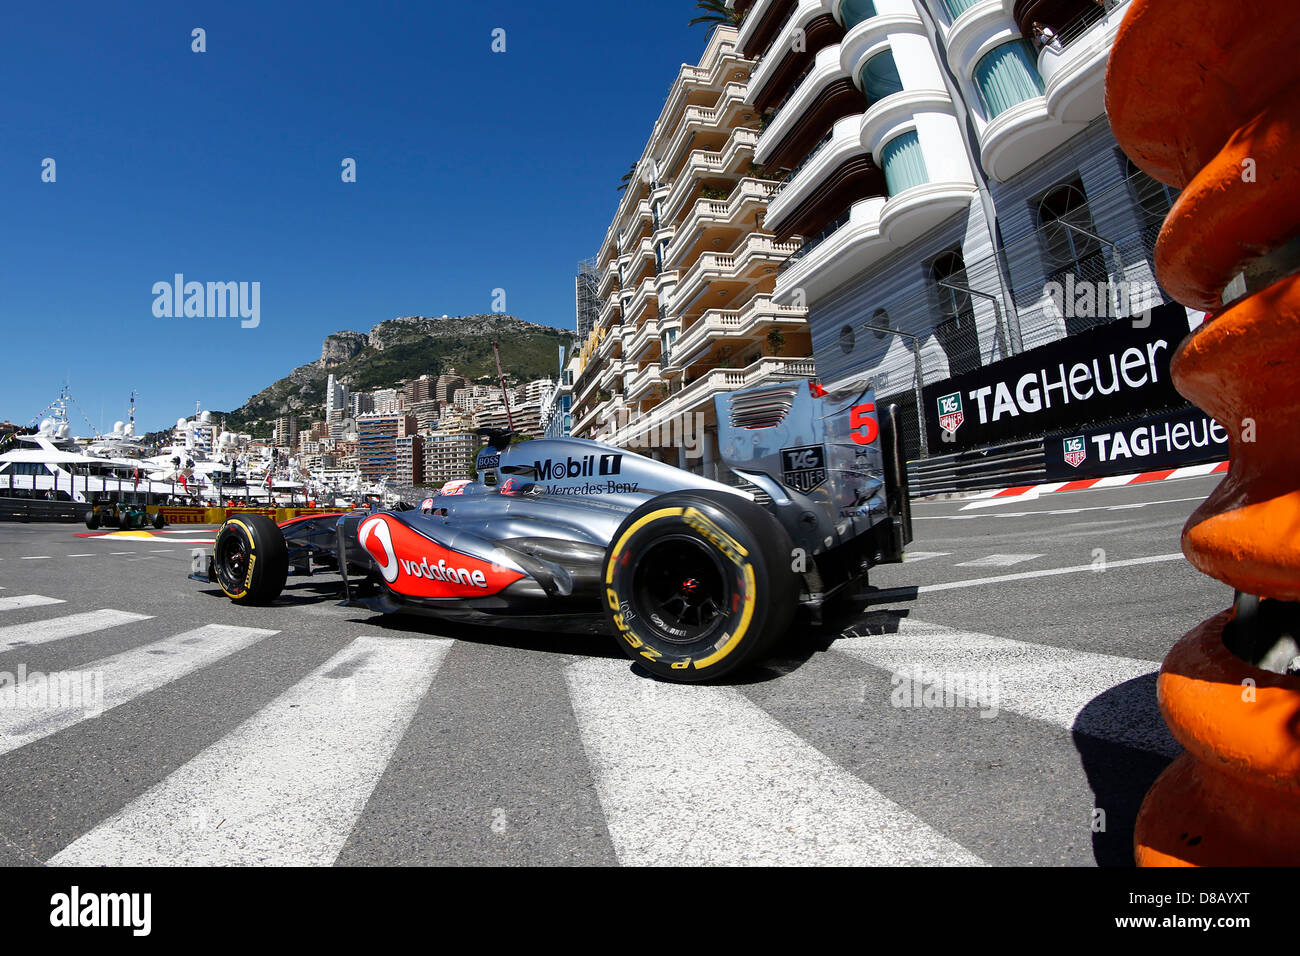 Il Principato di Monaco, 23 maggio 2013. Motorsports: FIA Formula One World Championship 2013, il Grand Prix di Monaco, #5 Jenson Button (GBR, Vodafone McLaren Mercedes), Credit: DPA/Alamy Live News Foto Stock